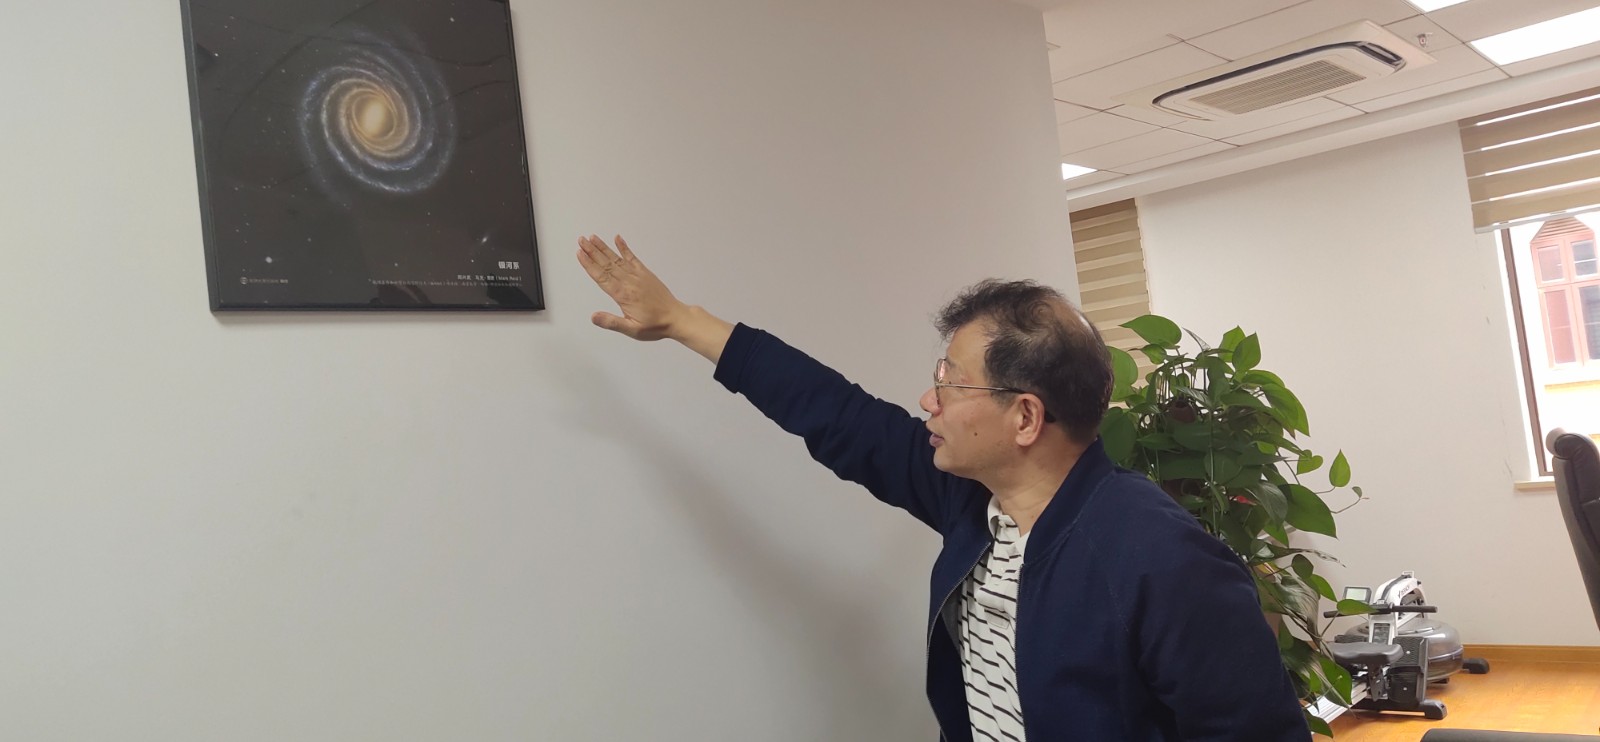 景益鹏院士正在介绍办公室墙上挂着的星系图.jpg